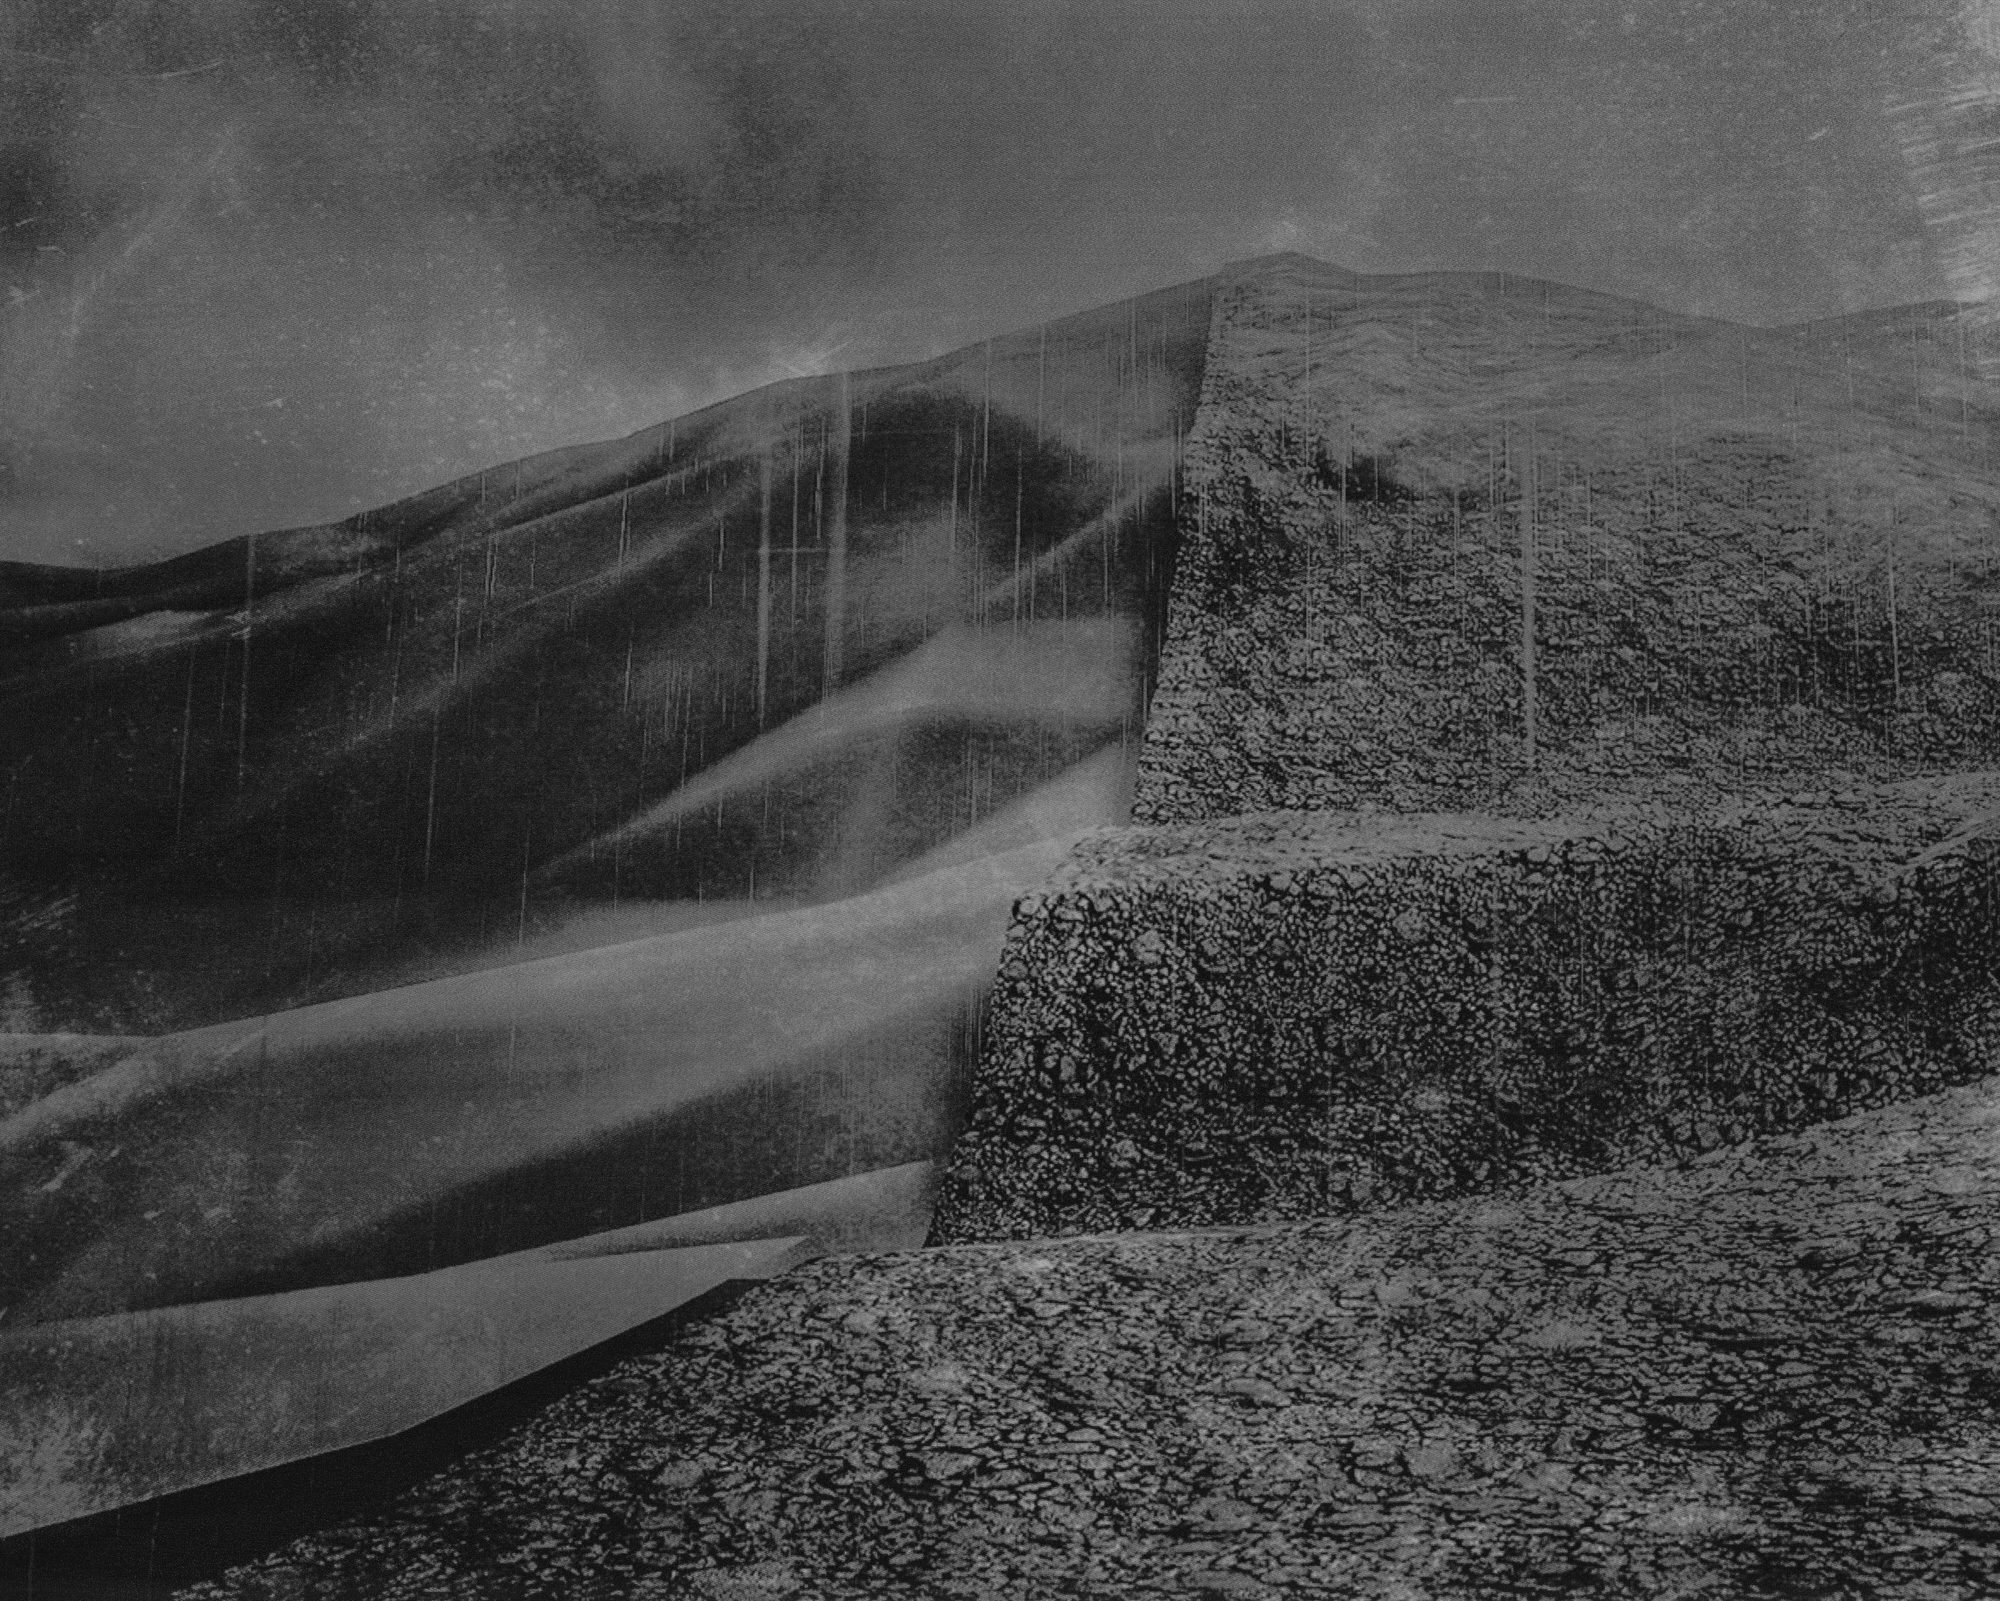 Et billede fra Esa Ylijaasko, billedet er dystert og viser em kontrast mellem en blød tekstur og en ru tekstur